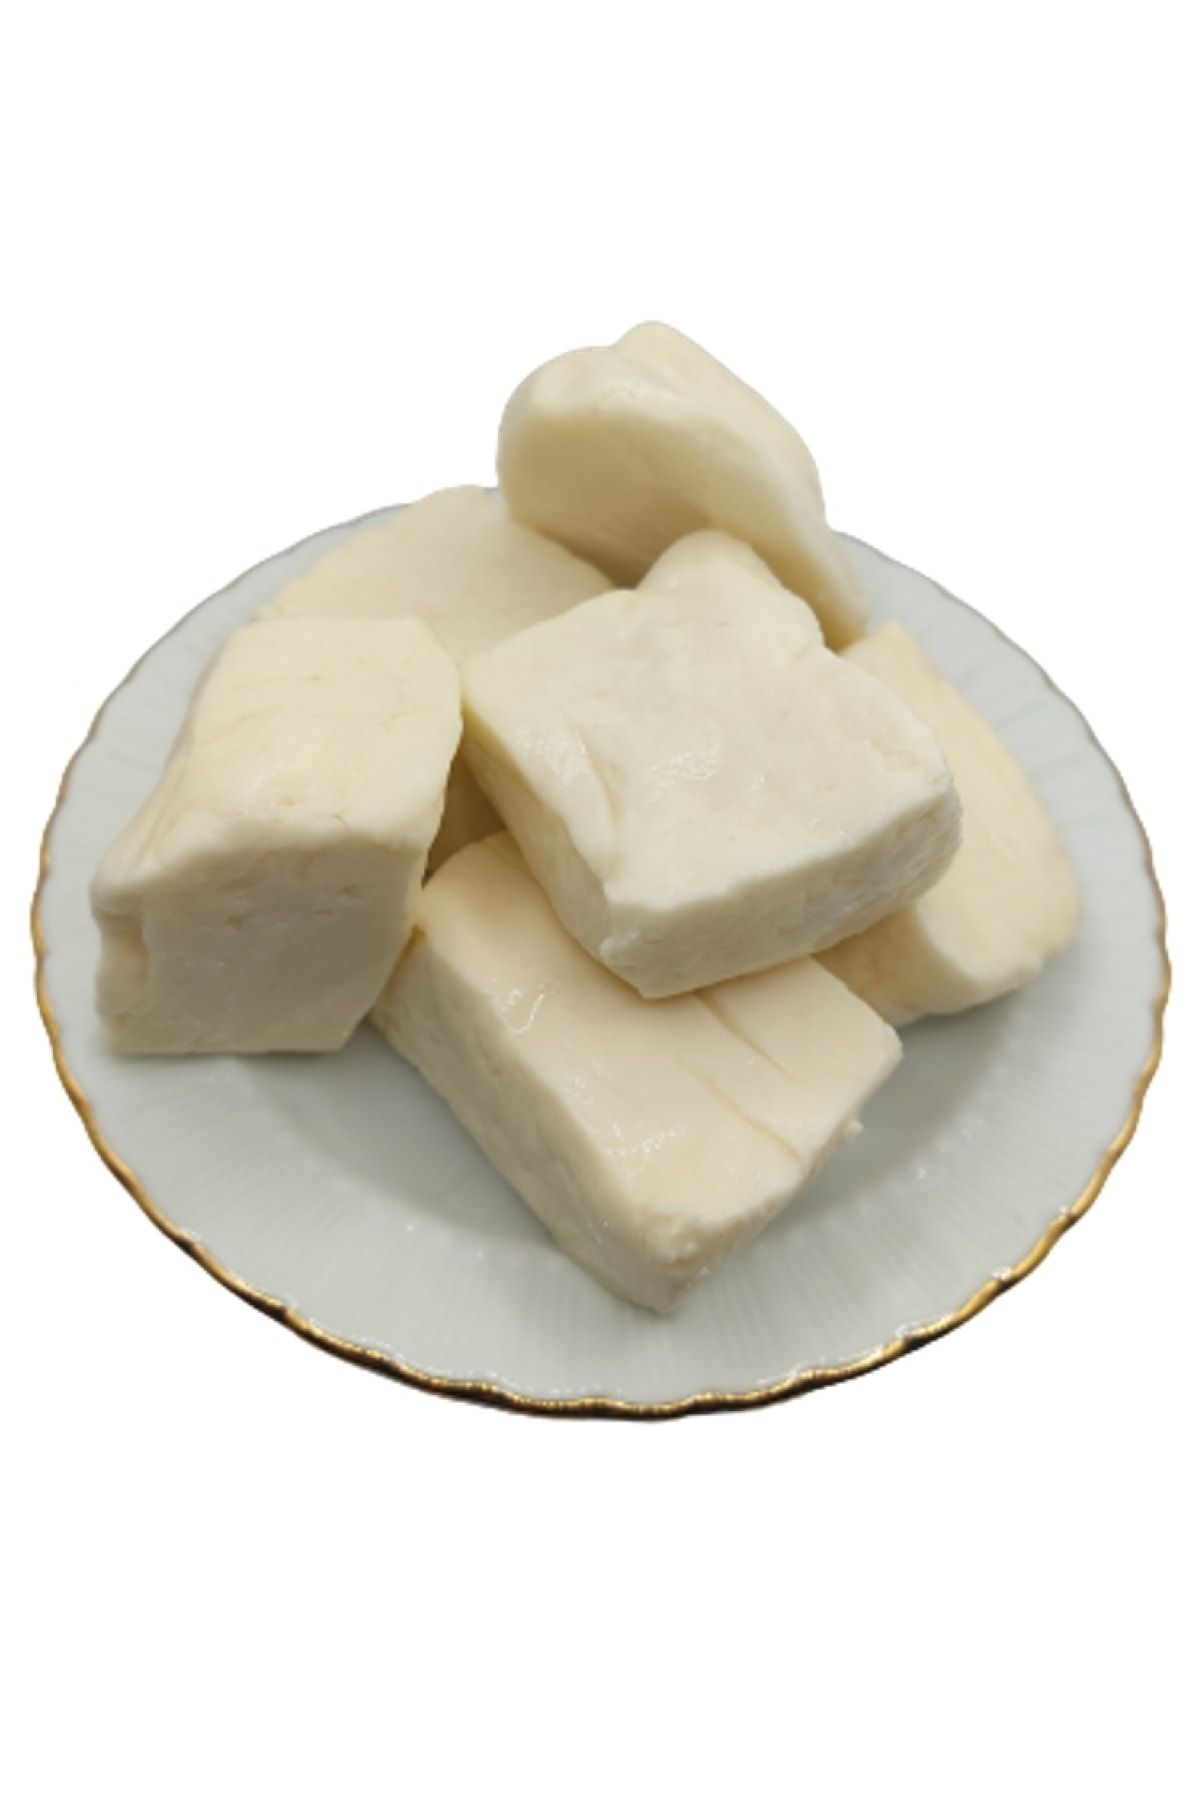 bakkal hasan Tam Yağlı Antep Peyniri (koyun Peyniri) 5 Kg -